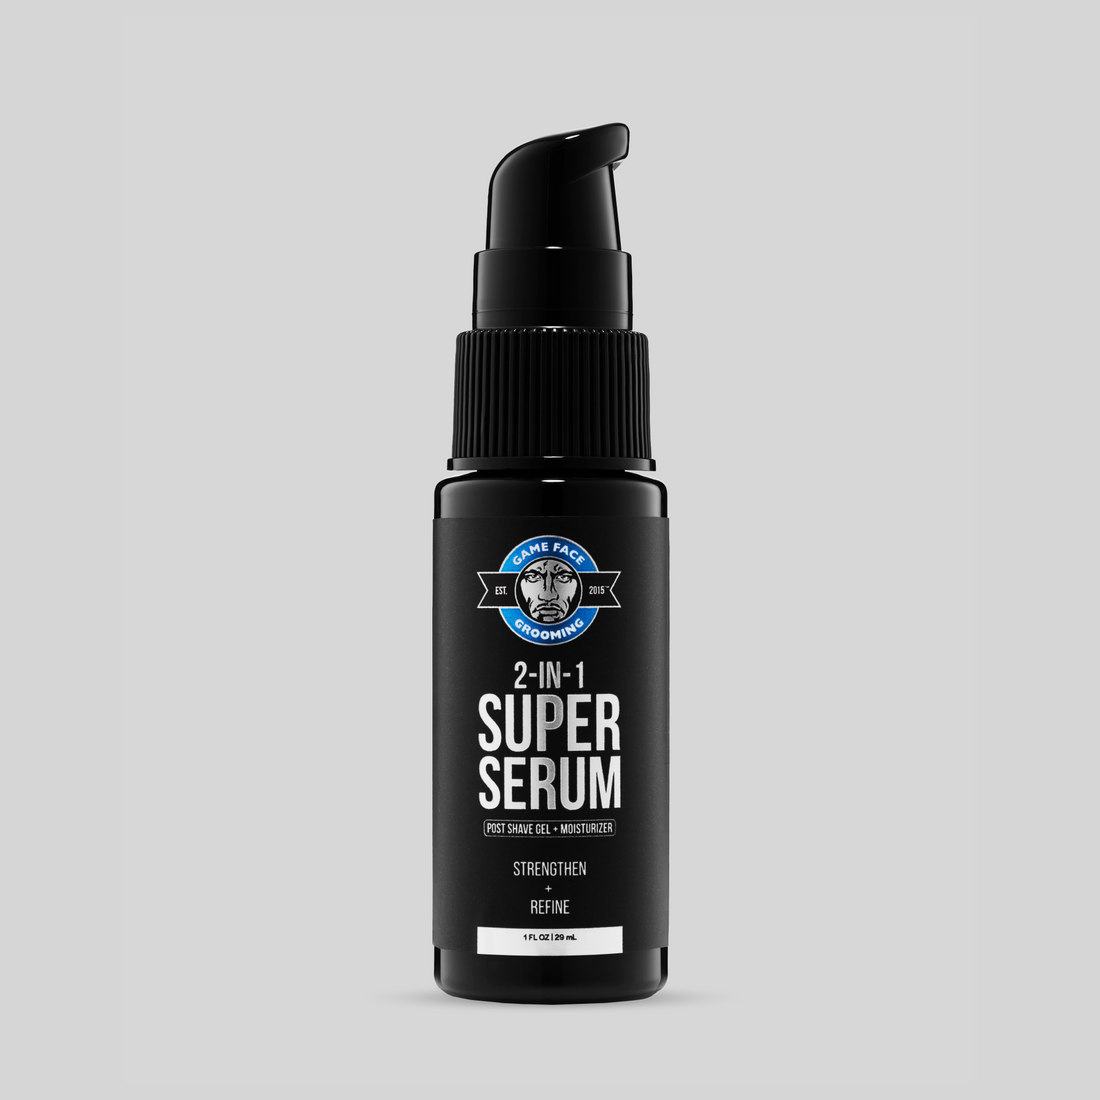 2-In-1 Super Serum